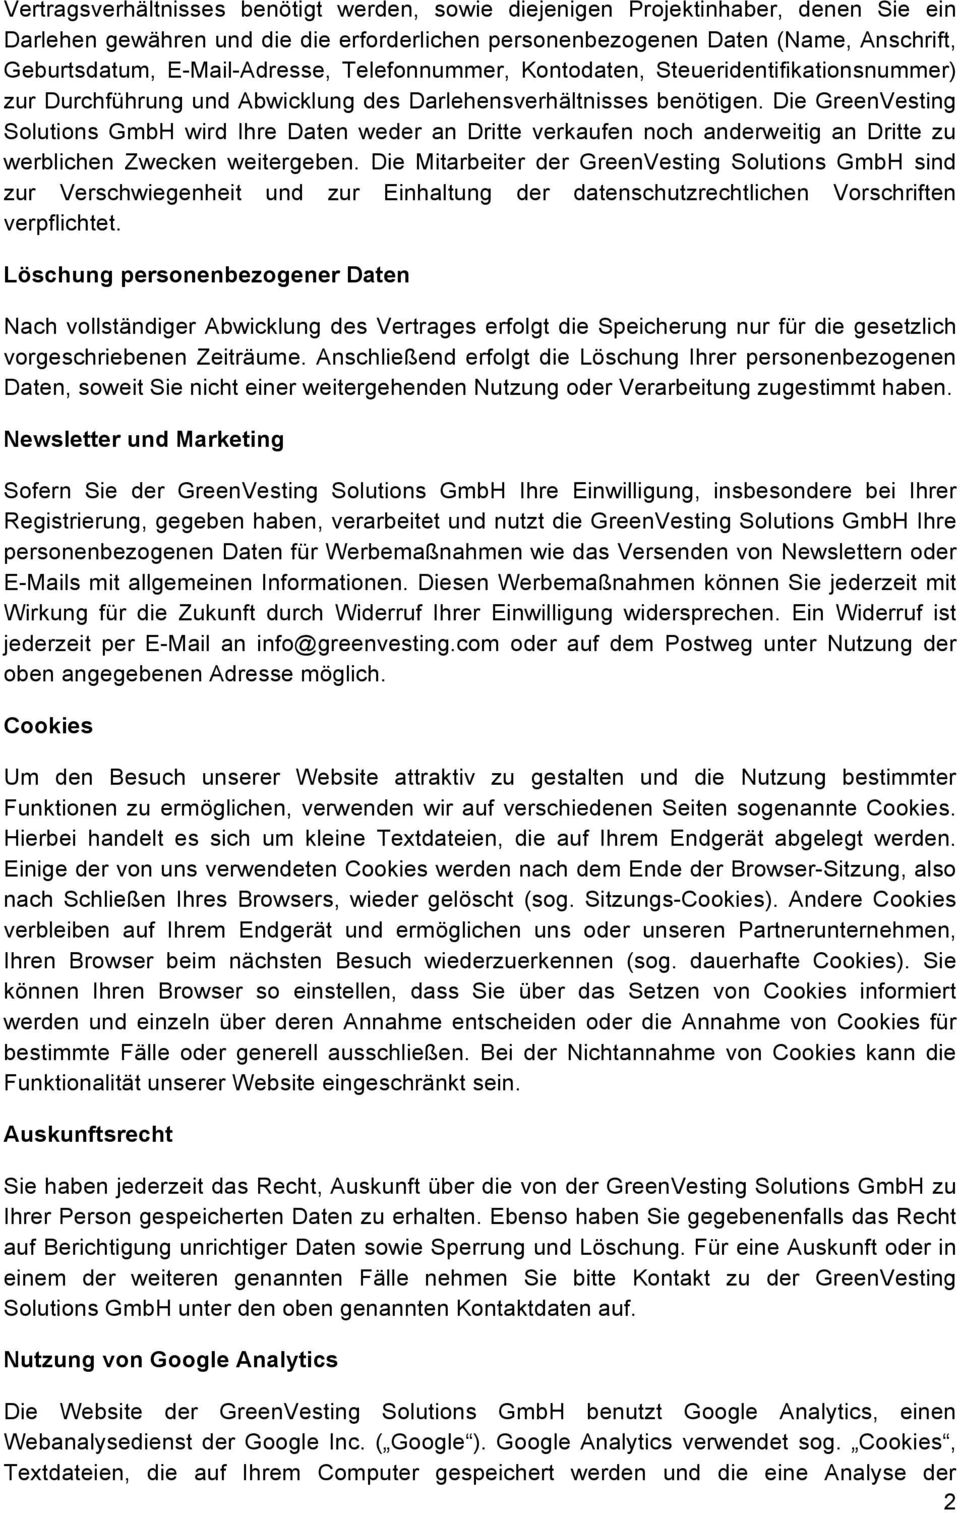 Die GreenVesting Solutions GmbH wird Ihre Daten weder an Dritte verkaufen noch anderweitig an Dritte zu werblichen Zwecken weitergeben.